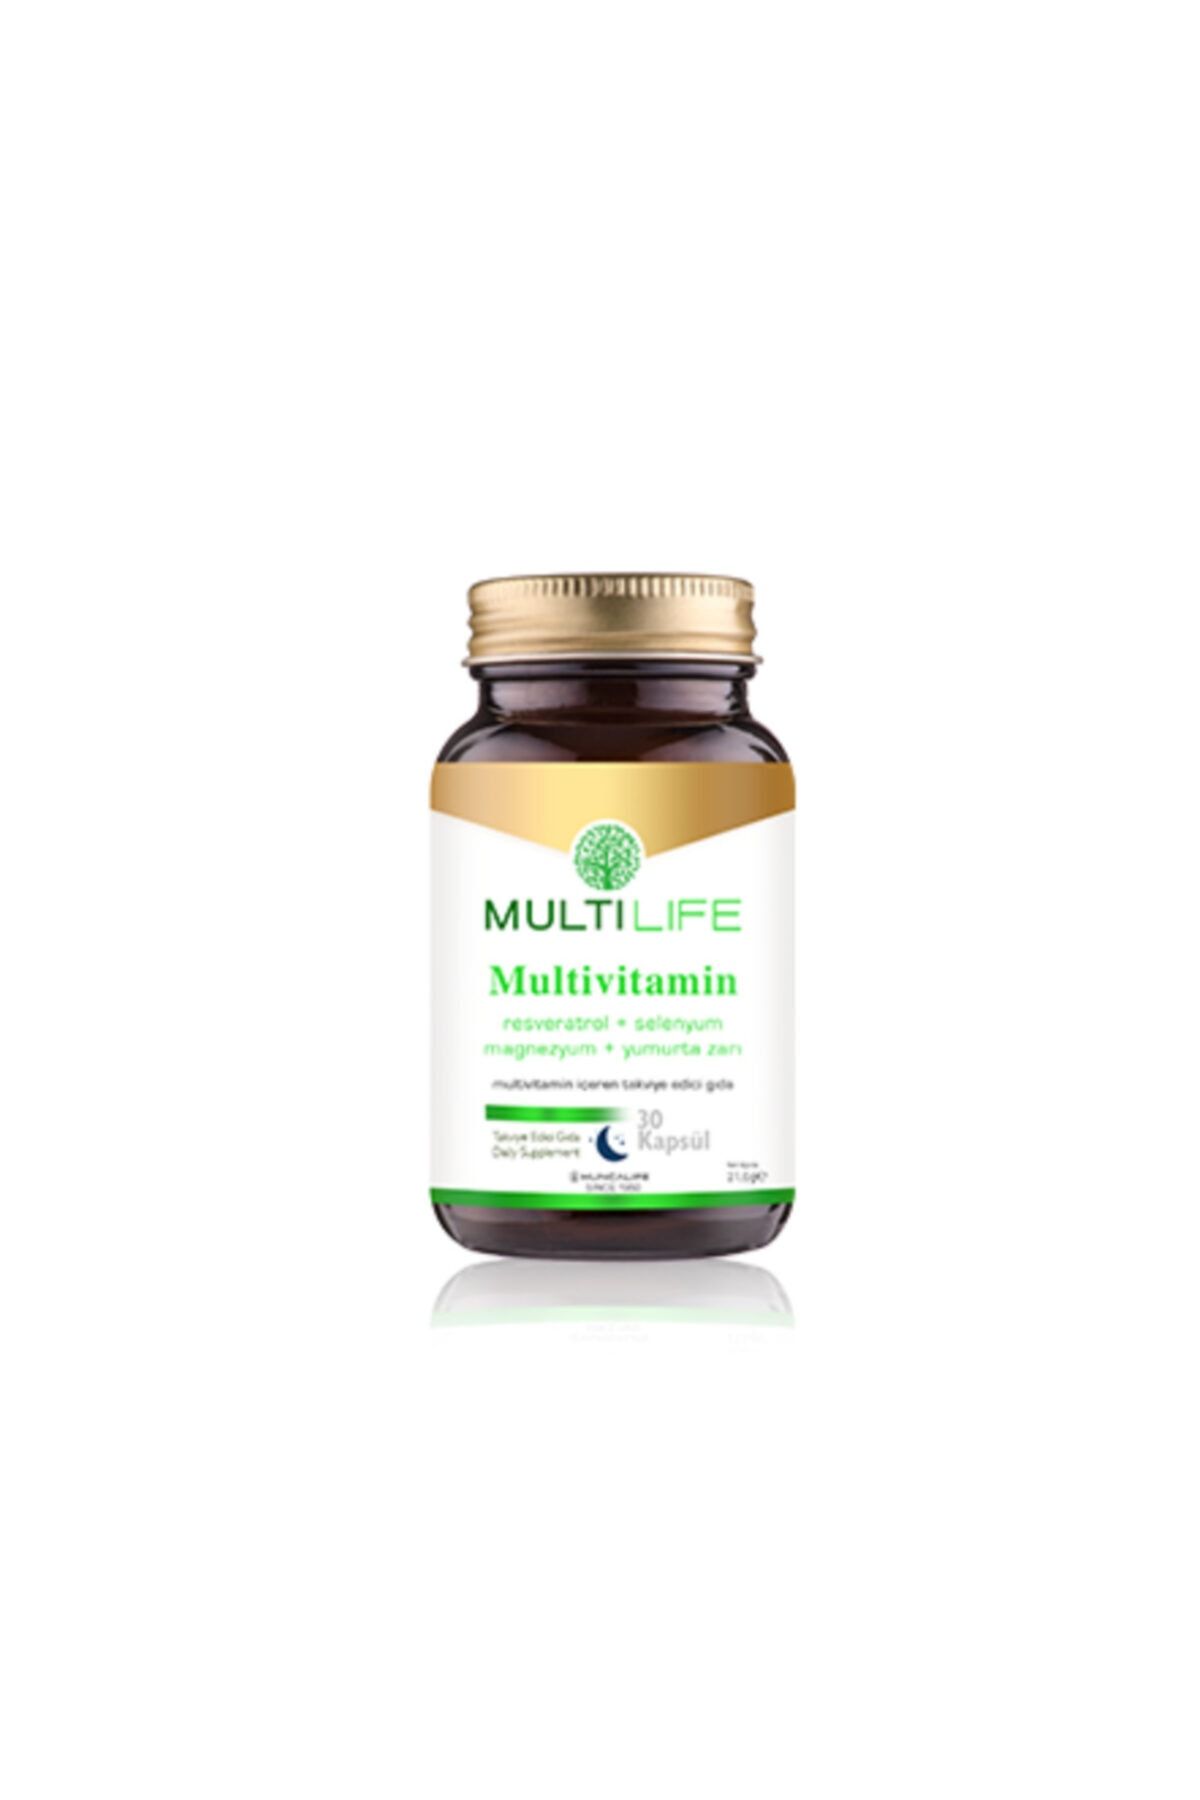 Huncalife Multilife Mutivitamin 30 Kapsül